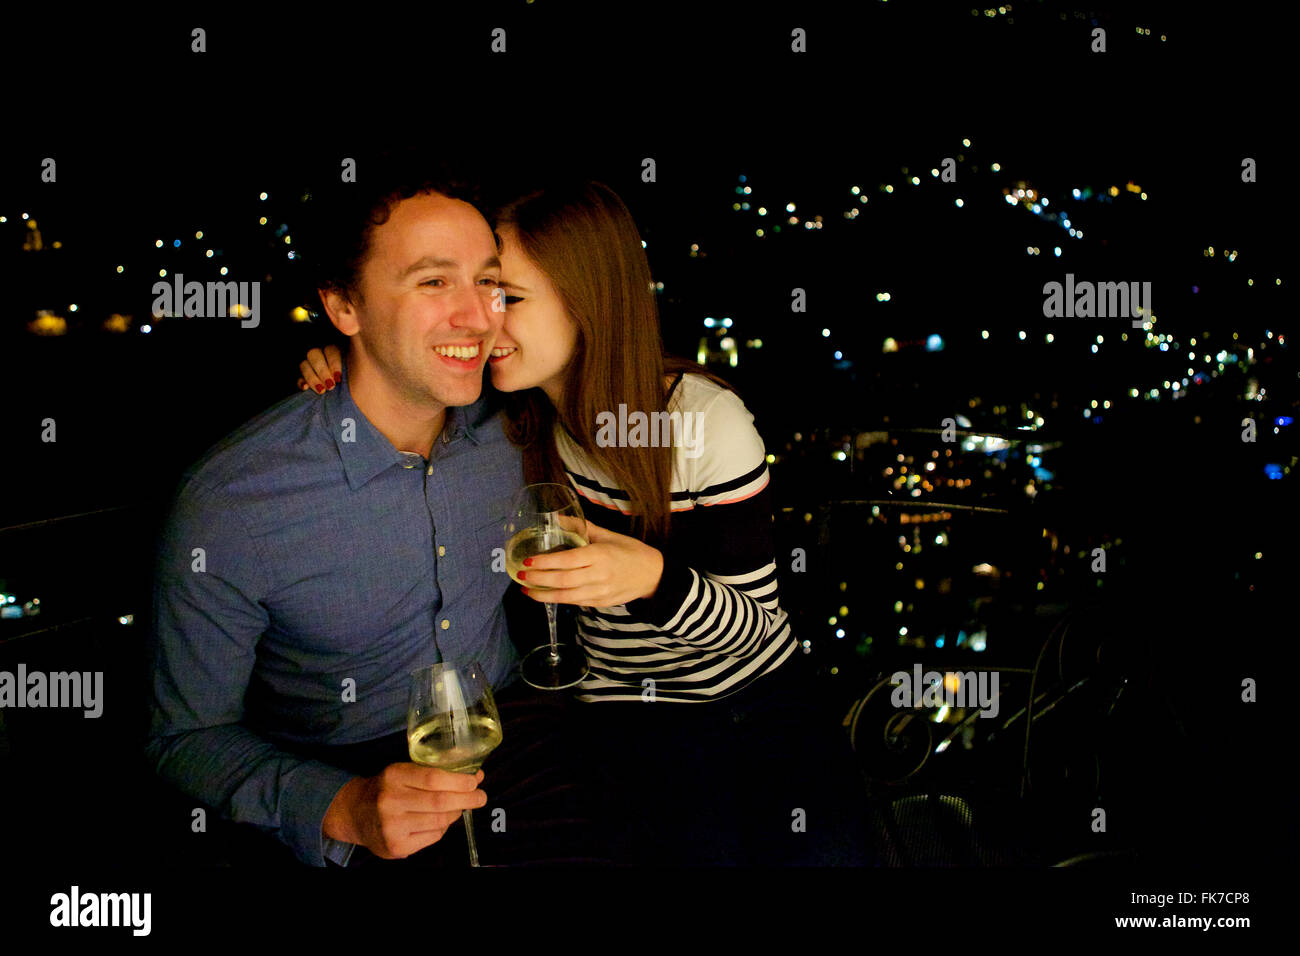 Les jeunes et dans l'amour brunette en vacances en Italie, côte amalfitaine, célébrer avec un verre sur le balcon de nuit Banque D'Images